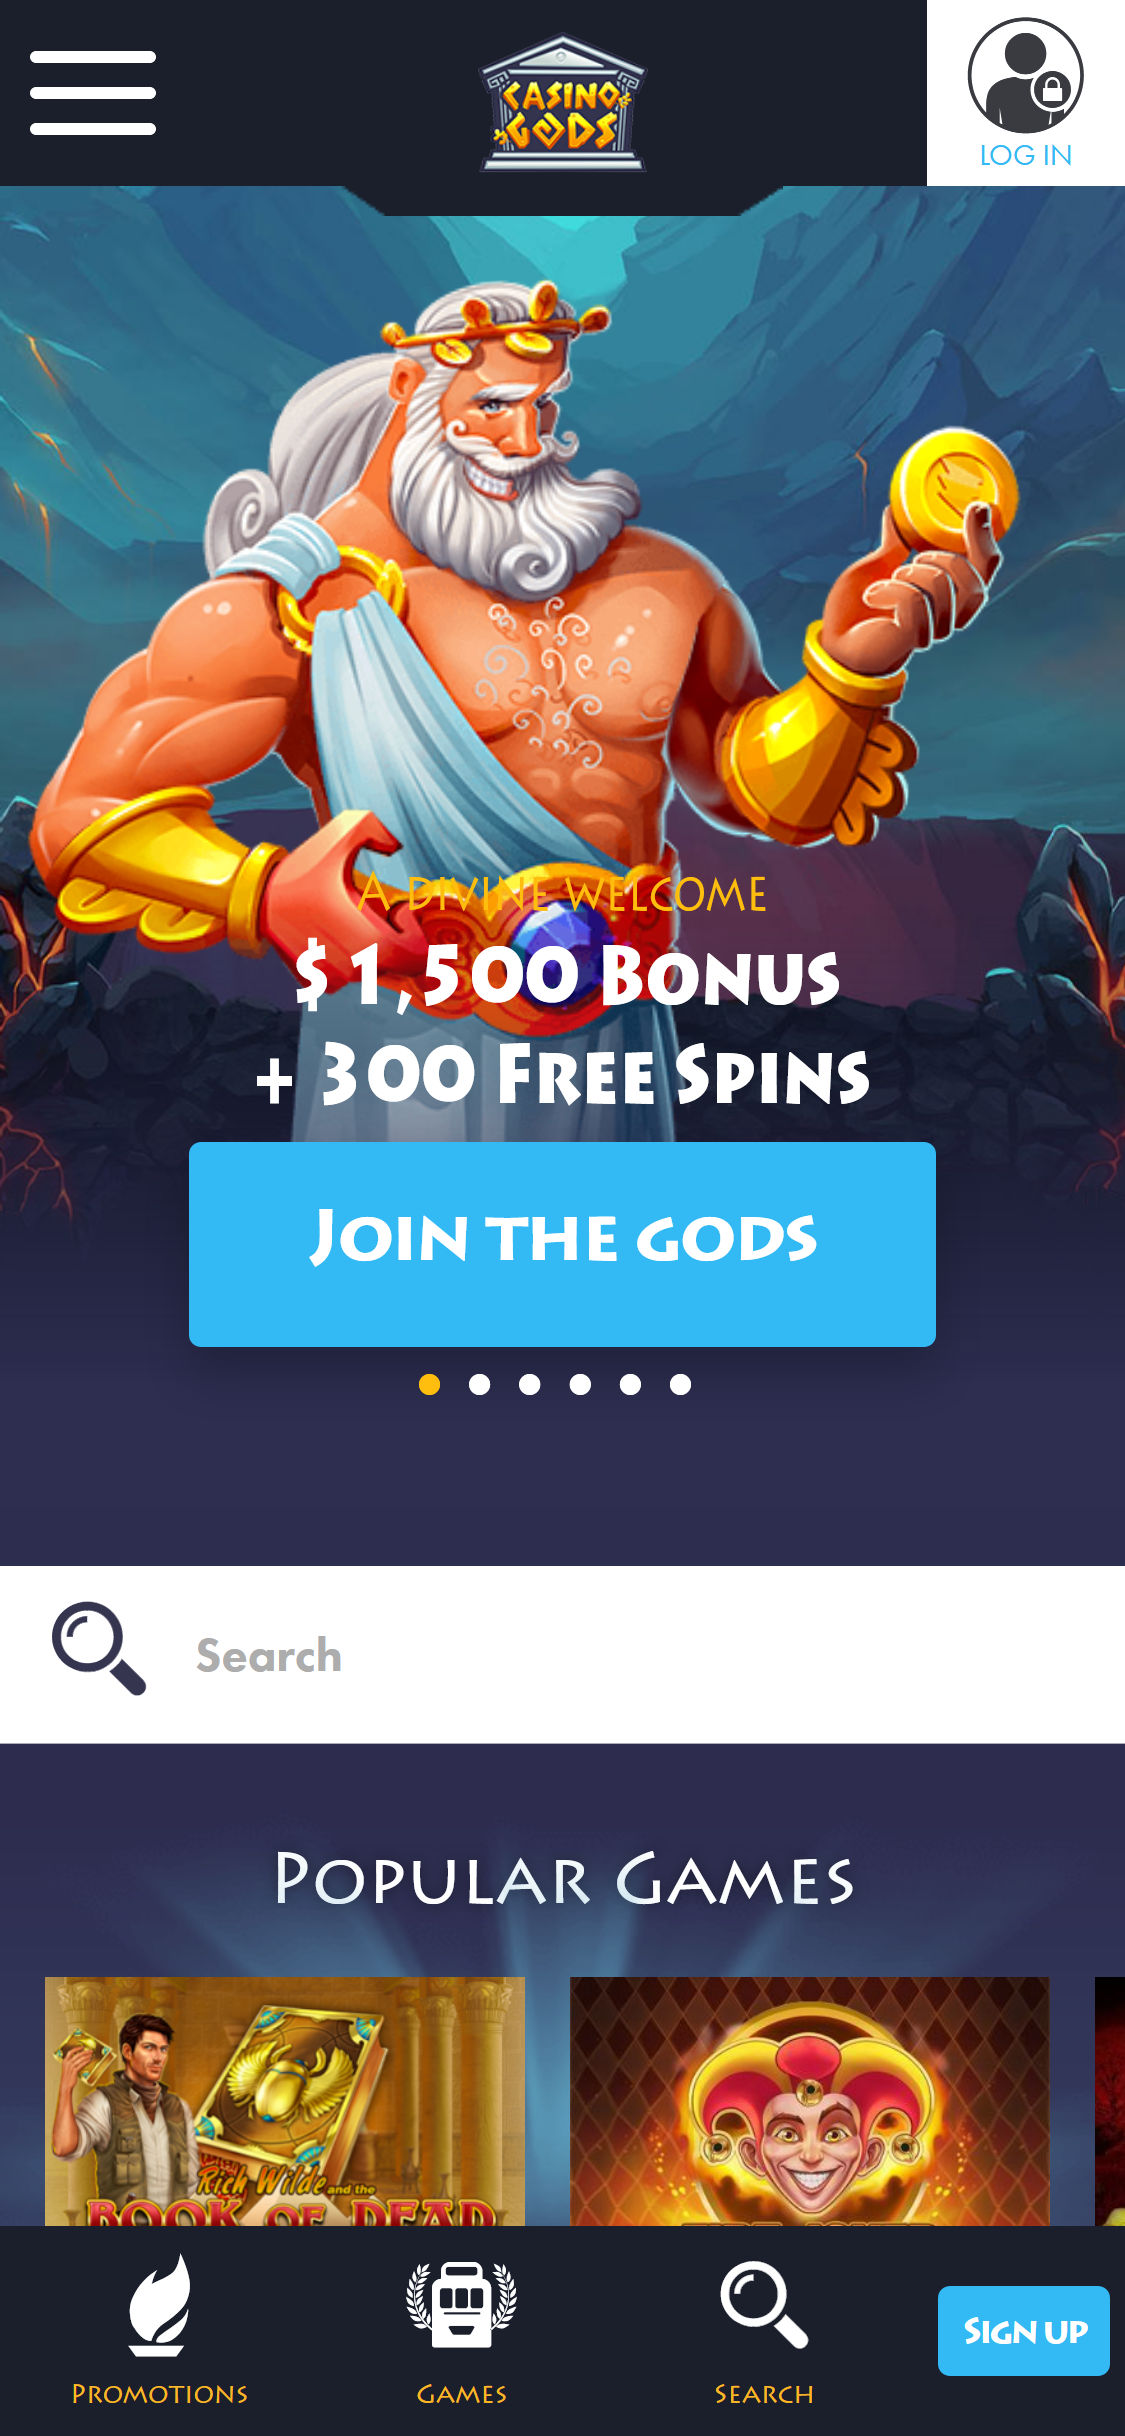 Casino Gods Mobile Review